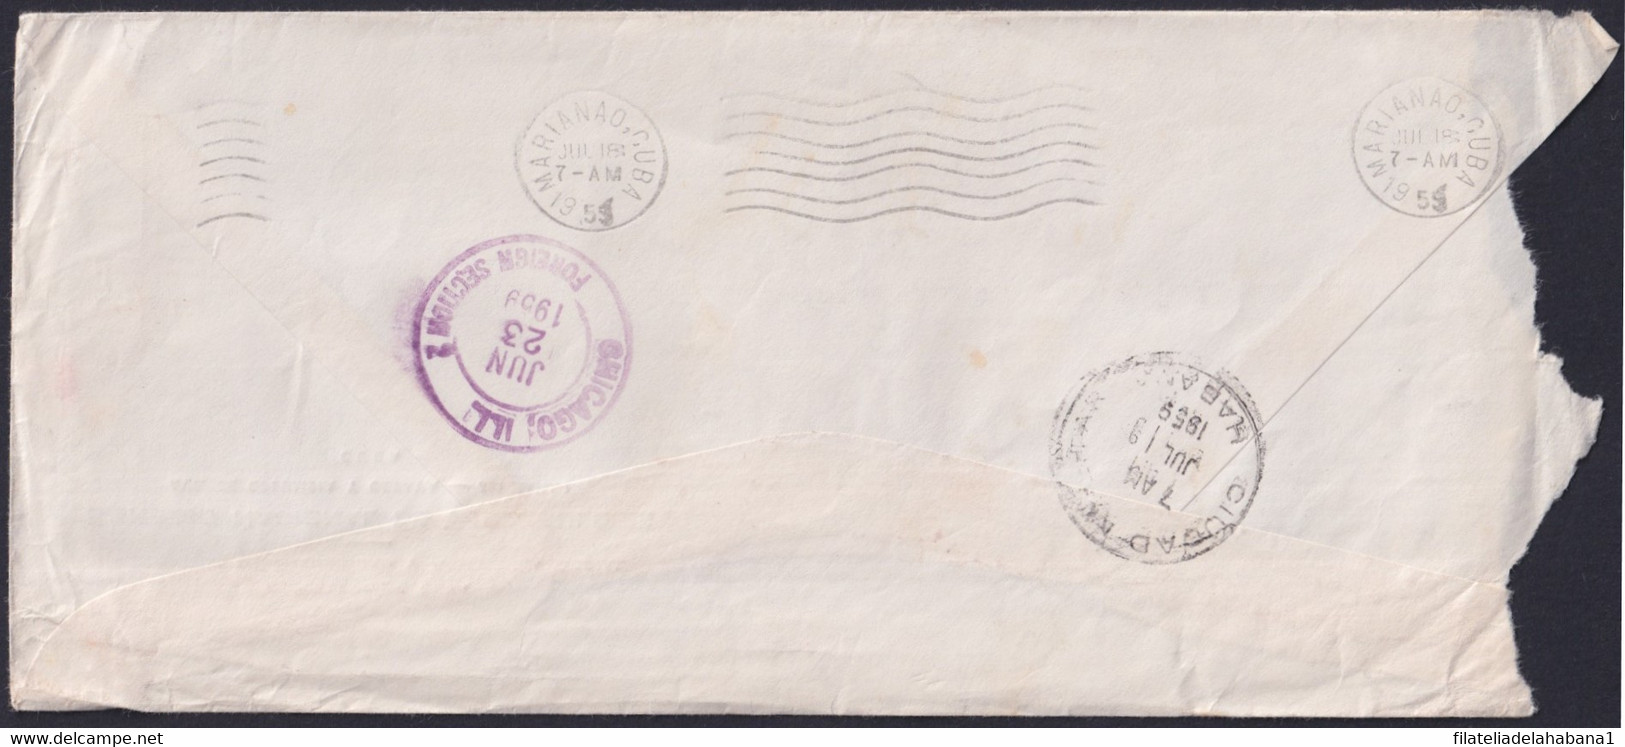 1959-H-39 CUBA 1959 LG-2158 OFFICIAL COVER POSTMARK FORWARDED COVER TO USA. - Briefe U. Dokumente